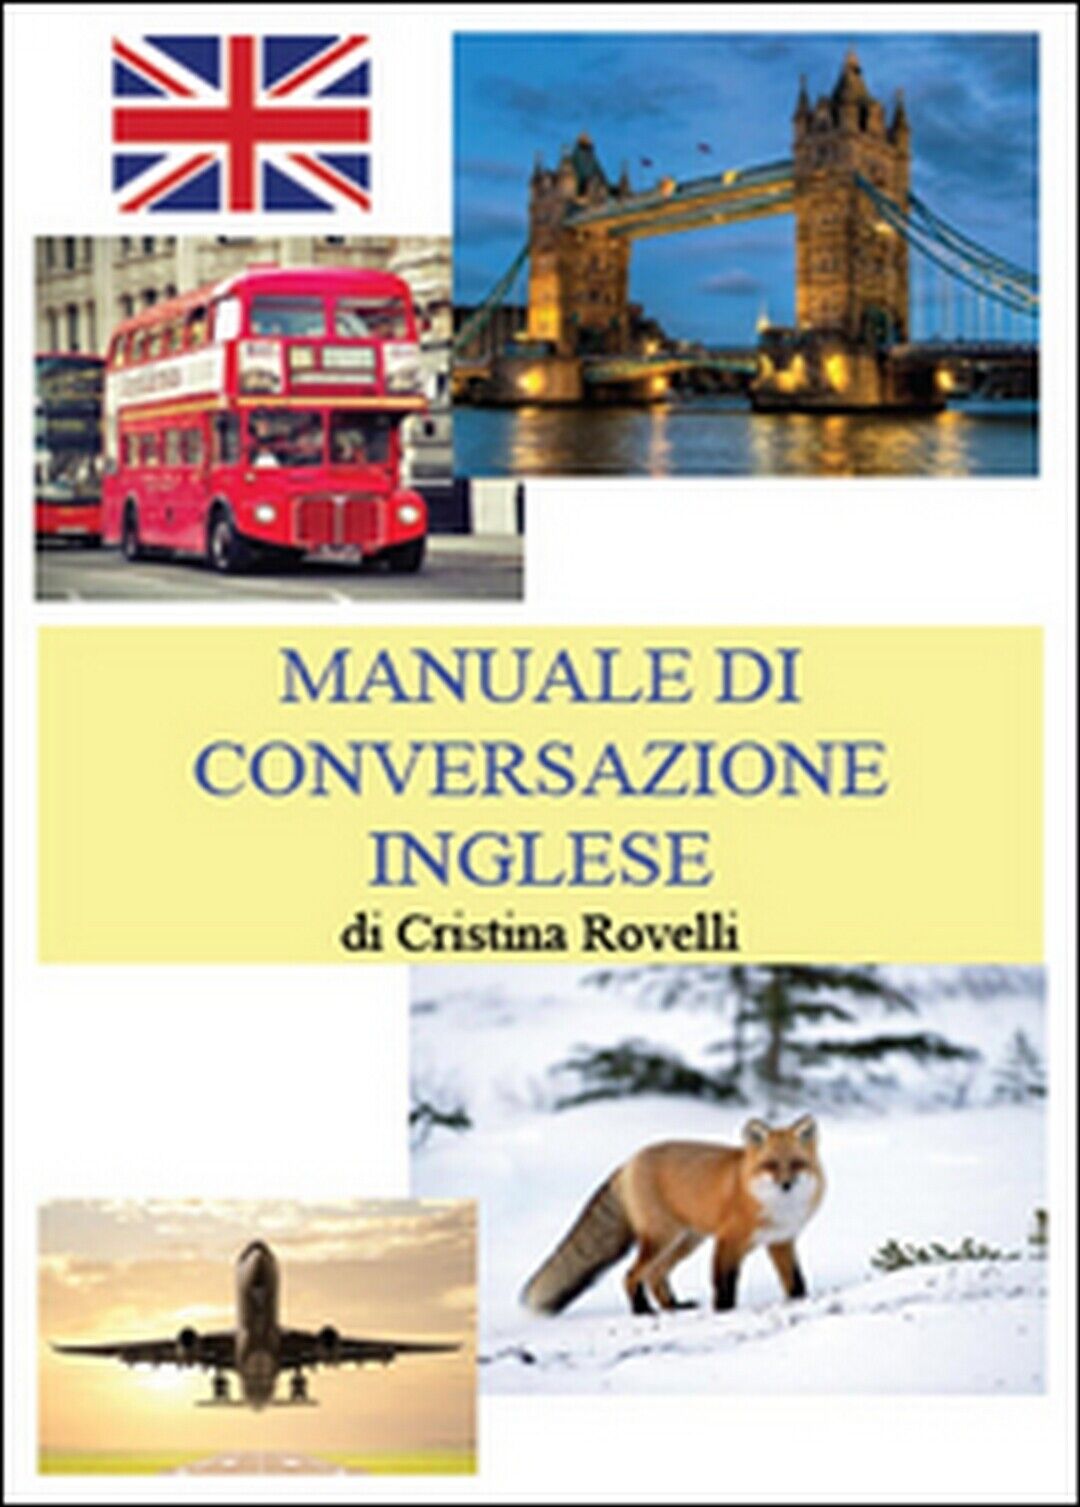 Manuale di conversazione inglese  di Cristina Rovelli,  2014,  Youcanprint